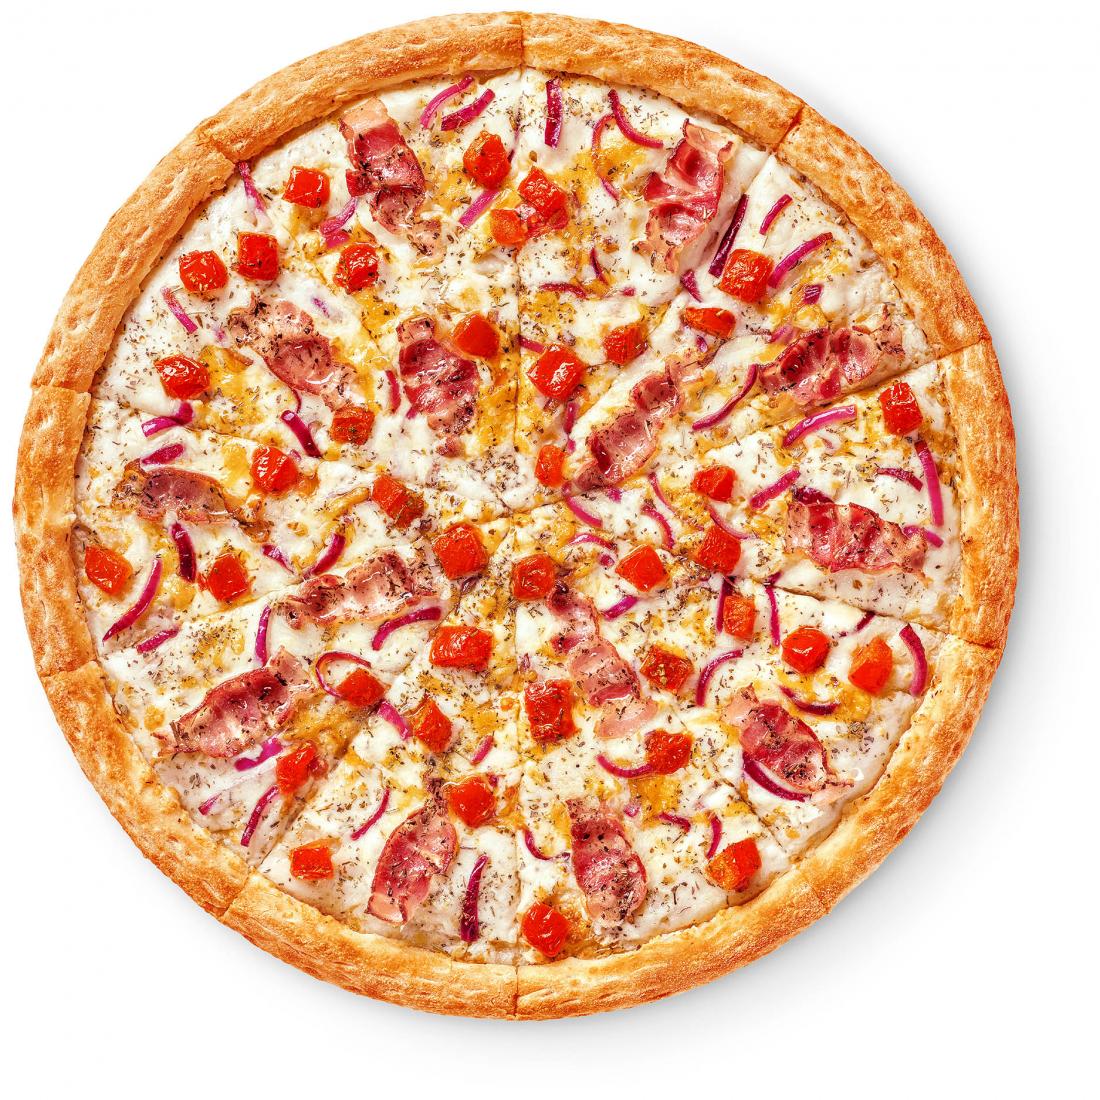 Guidas pizza webster ny